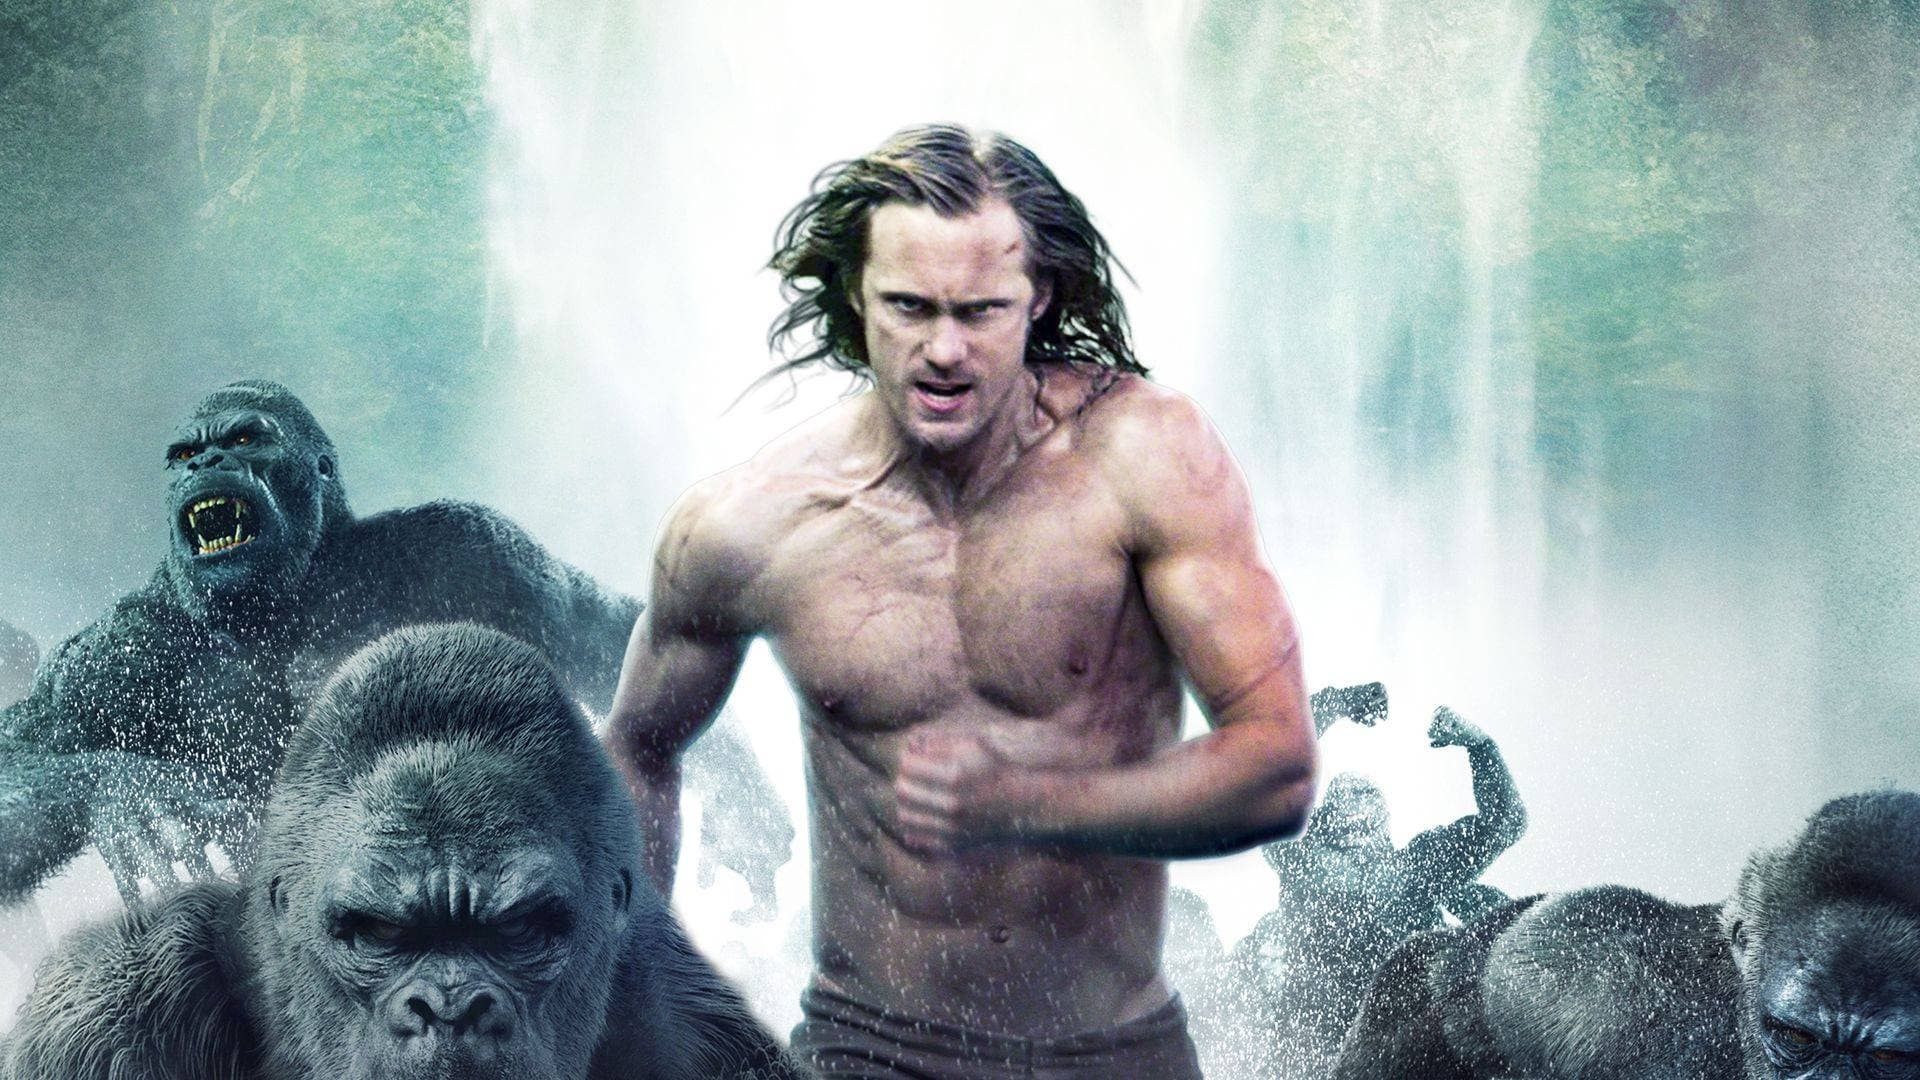 Huyền Thoại Tarzan (2016)